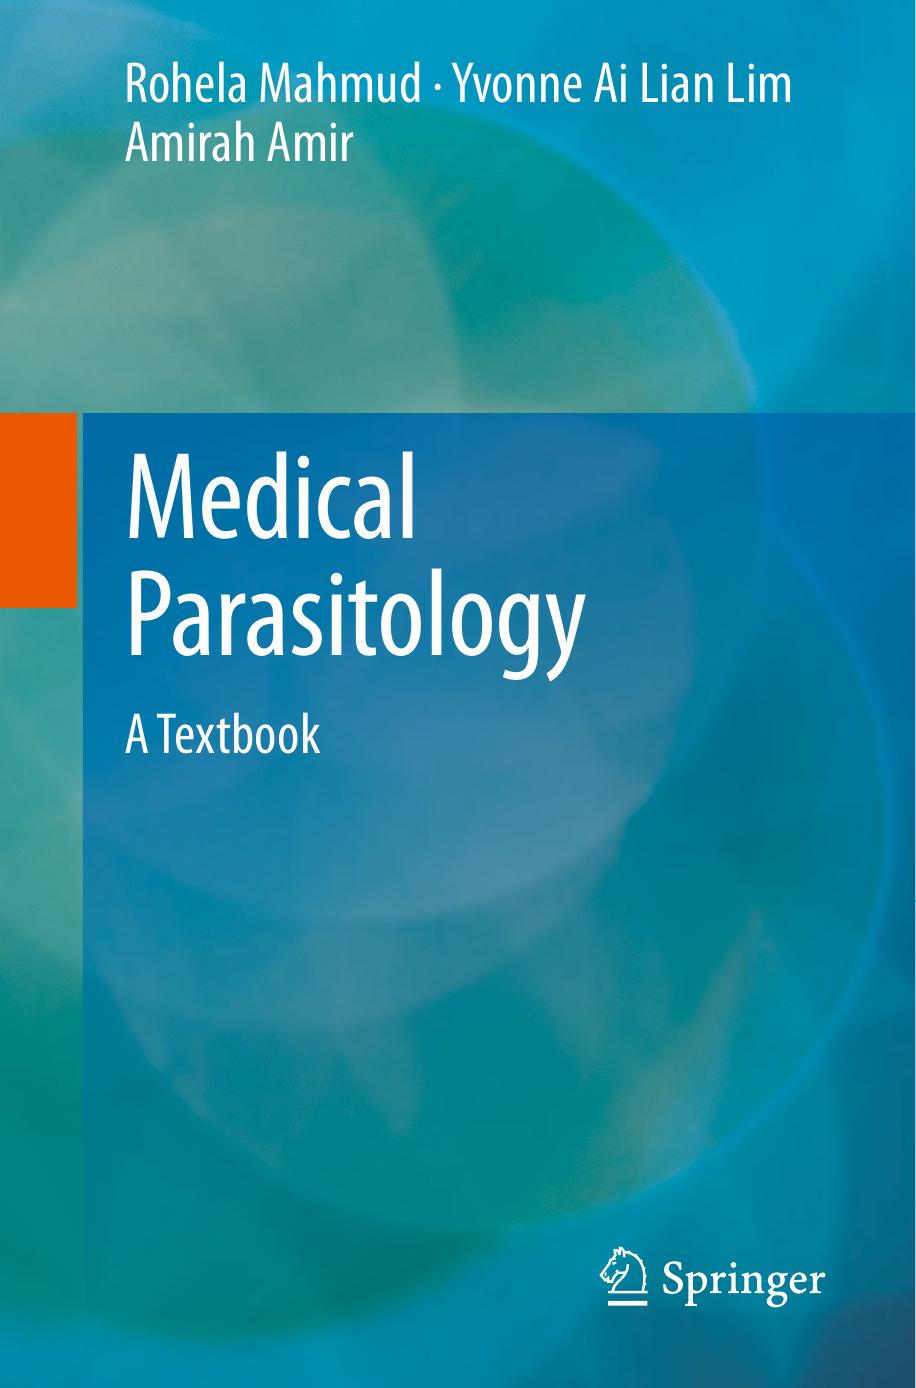 Medical Parasitology  A Textbook (2017)